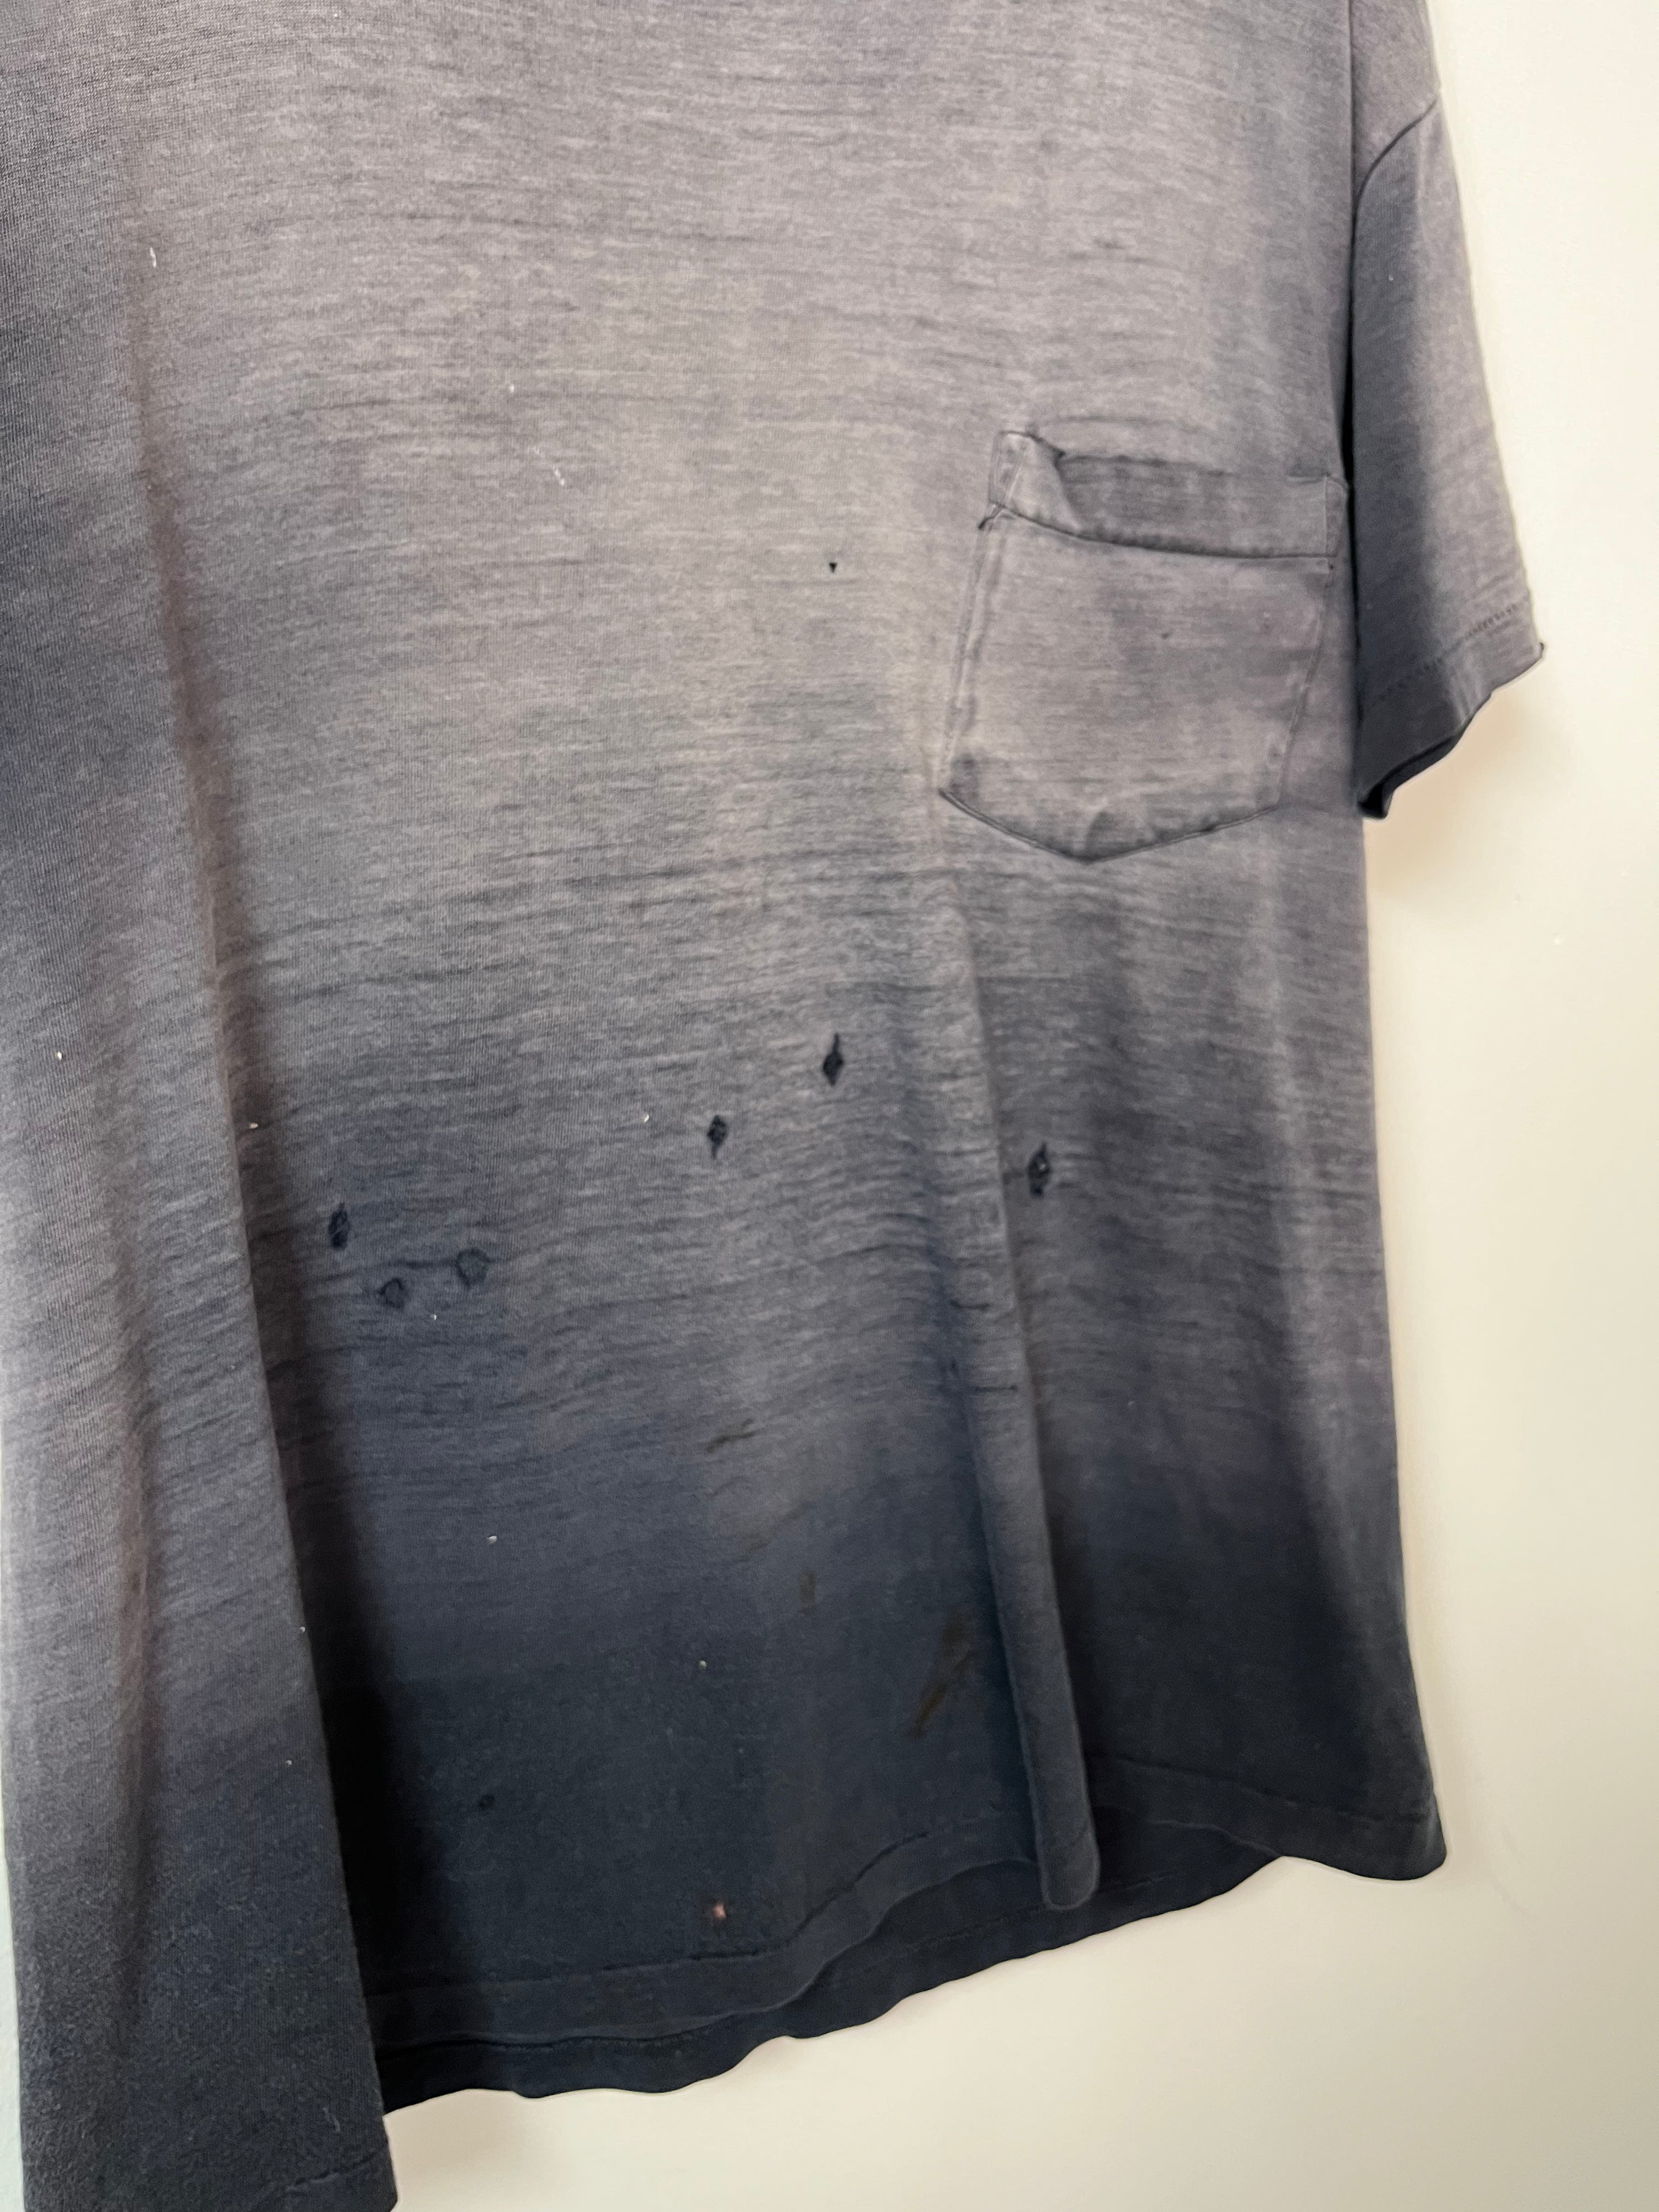 1980s Thrashed, Sun-Faded Pocket T-Shirt - Faded Black - L/XL